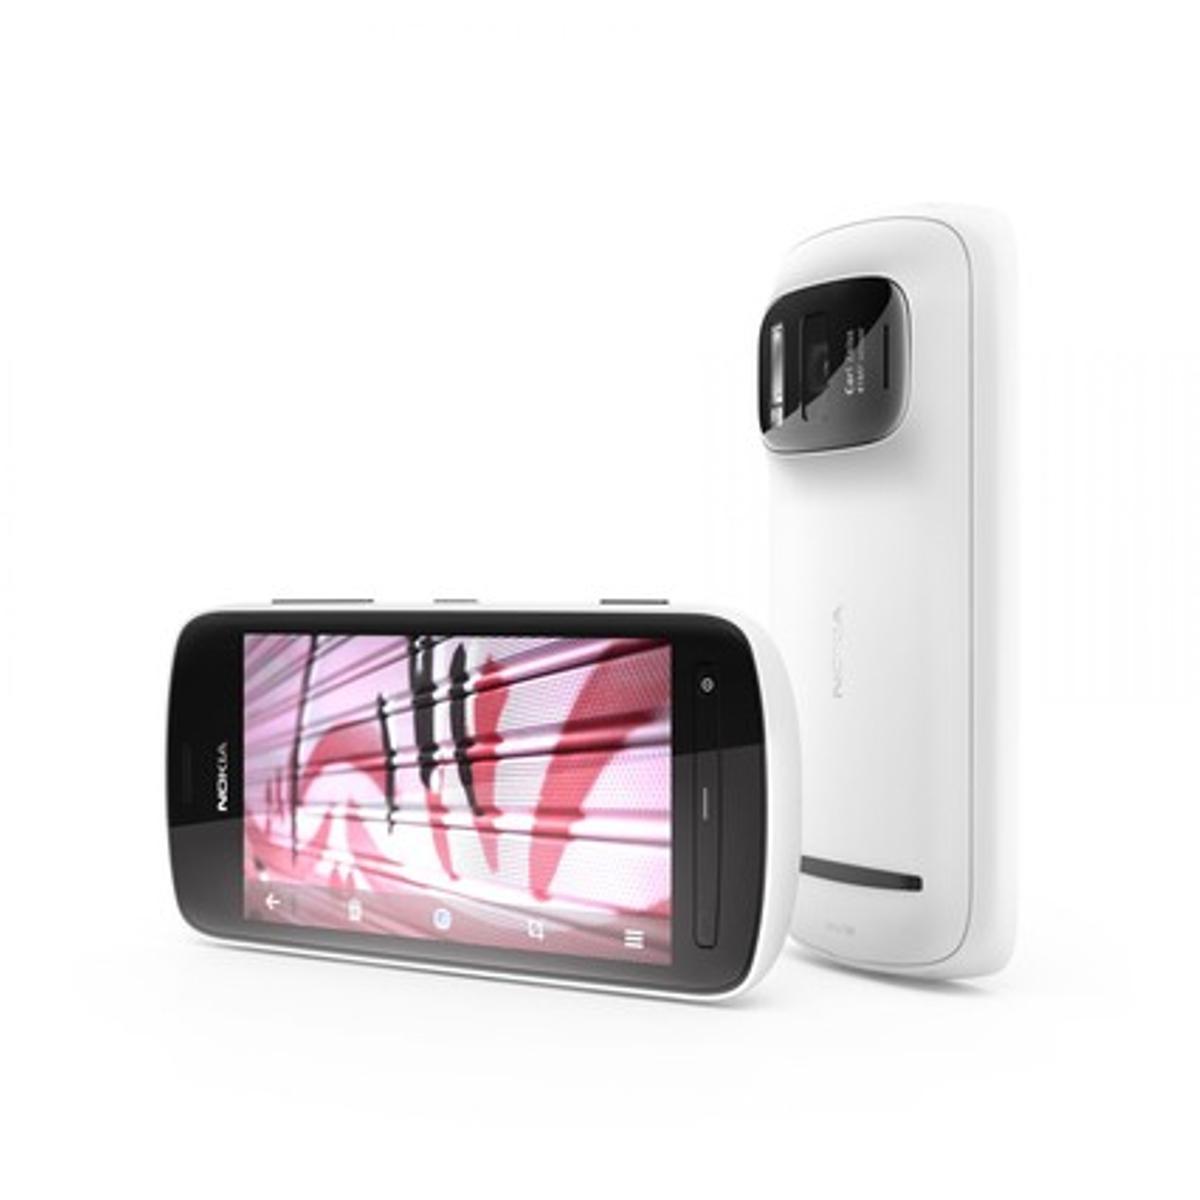 Nokia 808 Pure View, un smartphone con Symbian y cámara de 41 megapíxeles y zoom real de tres aumentos.